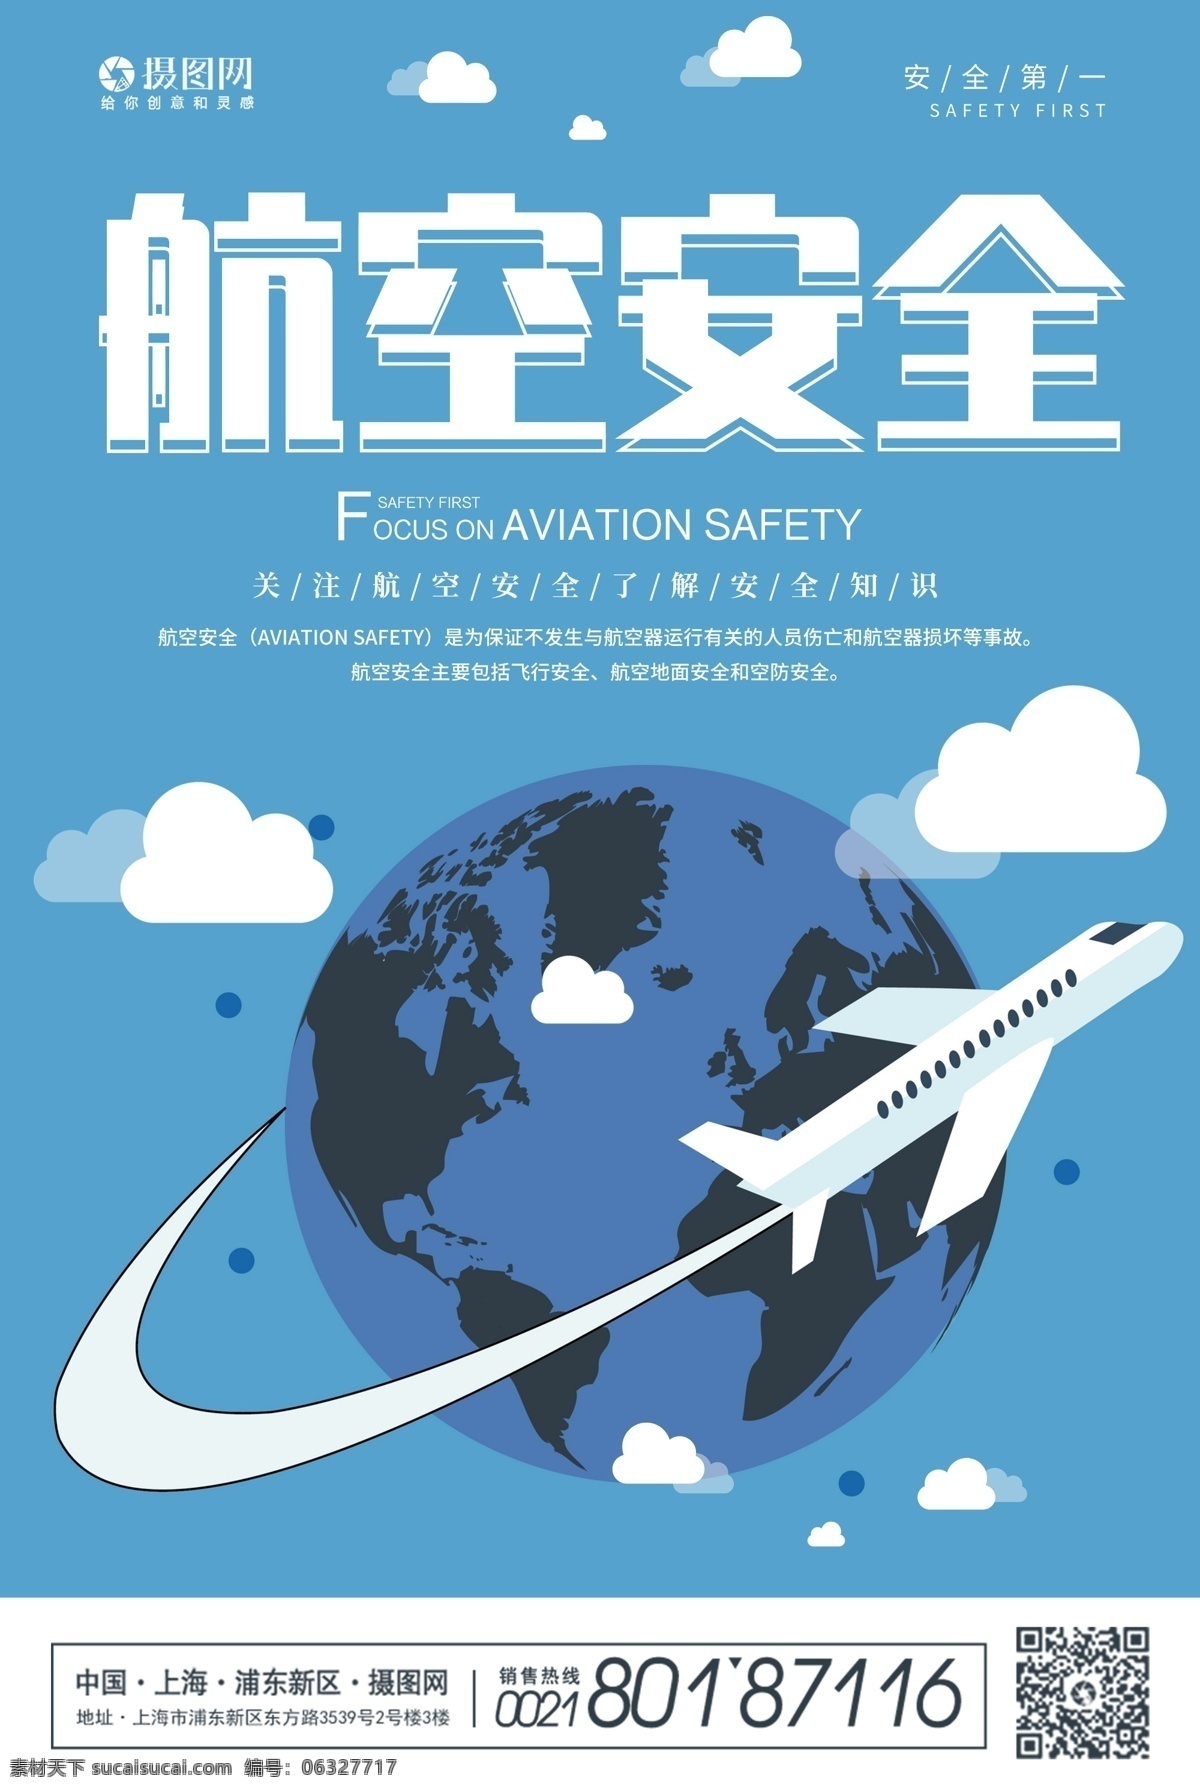 蓝色 航空 安全 宣传海报 航空安全 飞机 安全常识 安全知识 关注航空安全 飞机安全 飞行安全